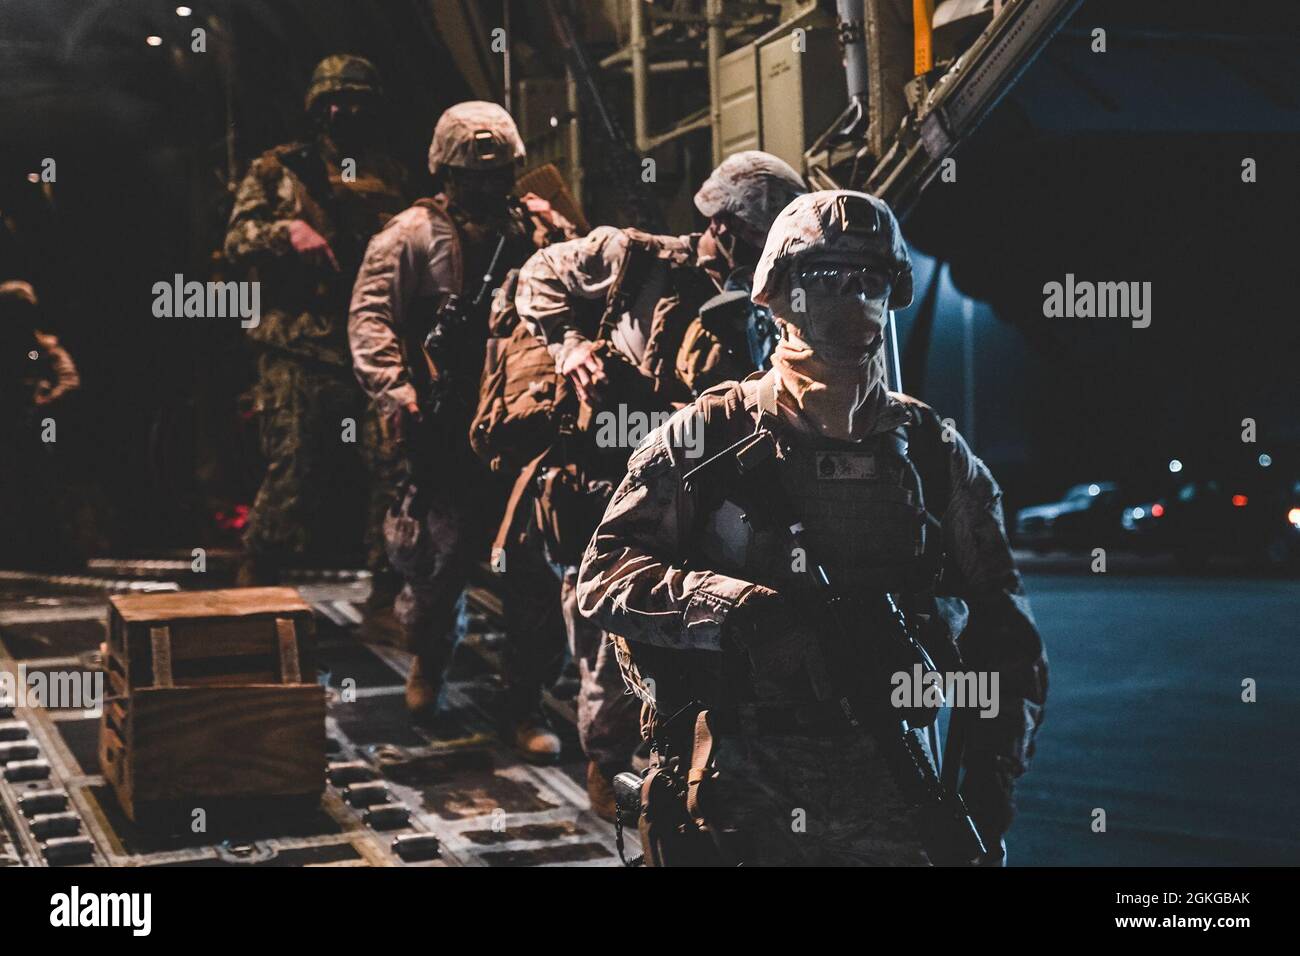 Marines des États-Unis avec Fleet anti-terrorisme Security Company, Europe (FASTEUR), marins de la marine des États-Unis avec unité mobile d'élimination des explosifs d'artillerie 8 (EODMU 8), Et les forces navales de construction, les « Seabees », commandant de la Force opérationnelle - 68 (CTF-68), débarquent un C-130 de la Force aérienne américaine à Niamey (Niger), le 15 avril 2021 pour un exercice conjoint de préparation des forces au Mali (Afrique). Les forces américaines effectuent régulièrement des exercices d'évaluation opérationnelle et logistique dans toutes les régions afin de se préparer aux imprévus, de faire preuve de préparation et d'identifier les domaines d'amélioration. Banque D'Images